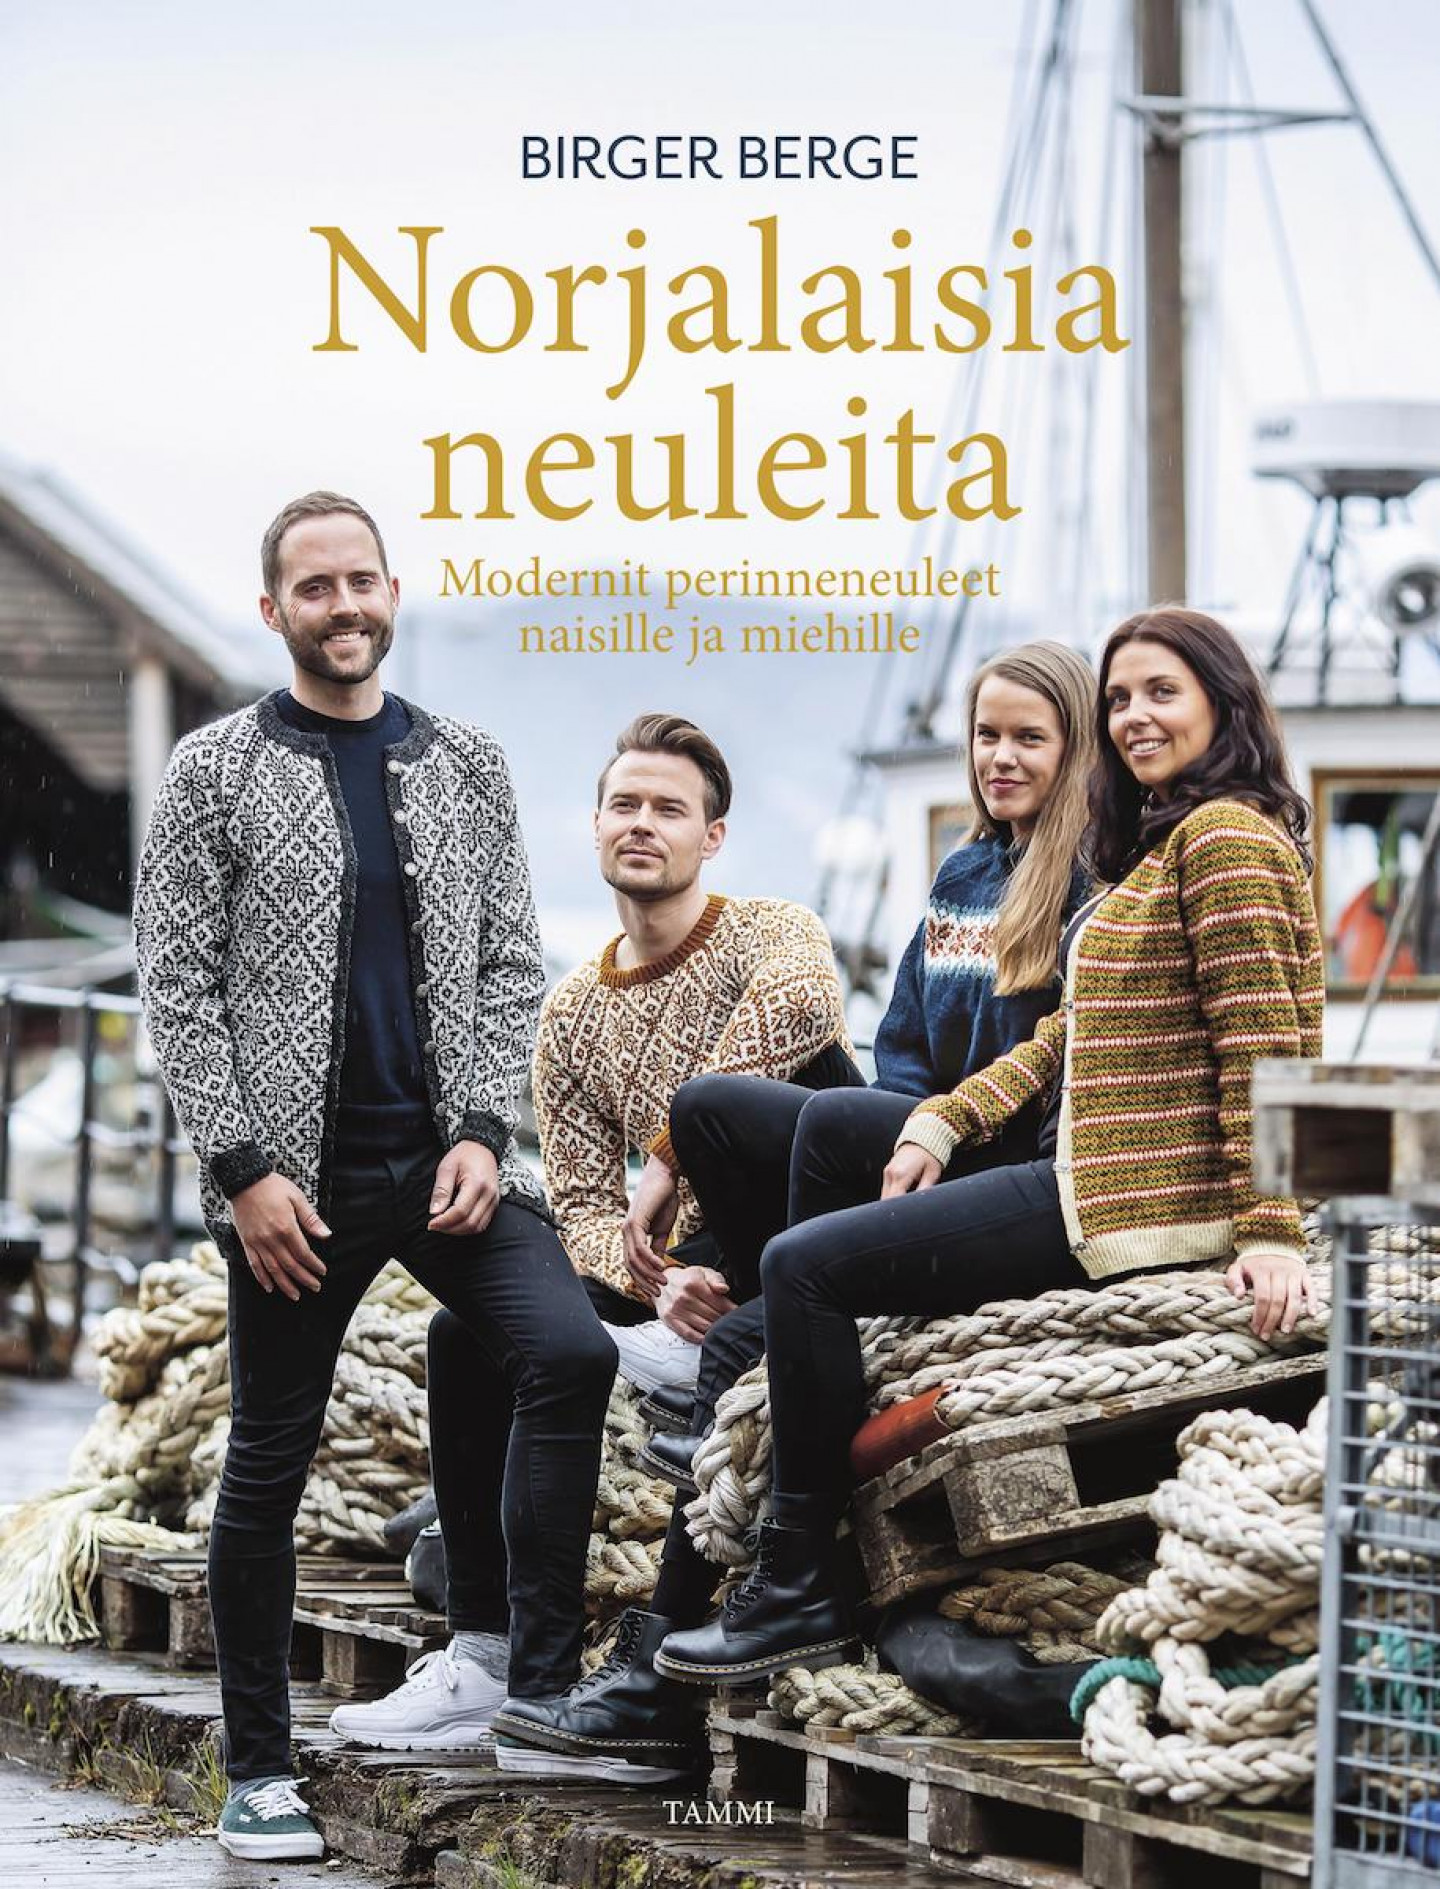 Norjalaisia neuleita - Birger Berge, Finnish